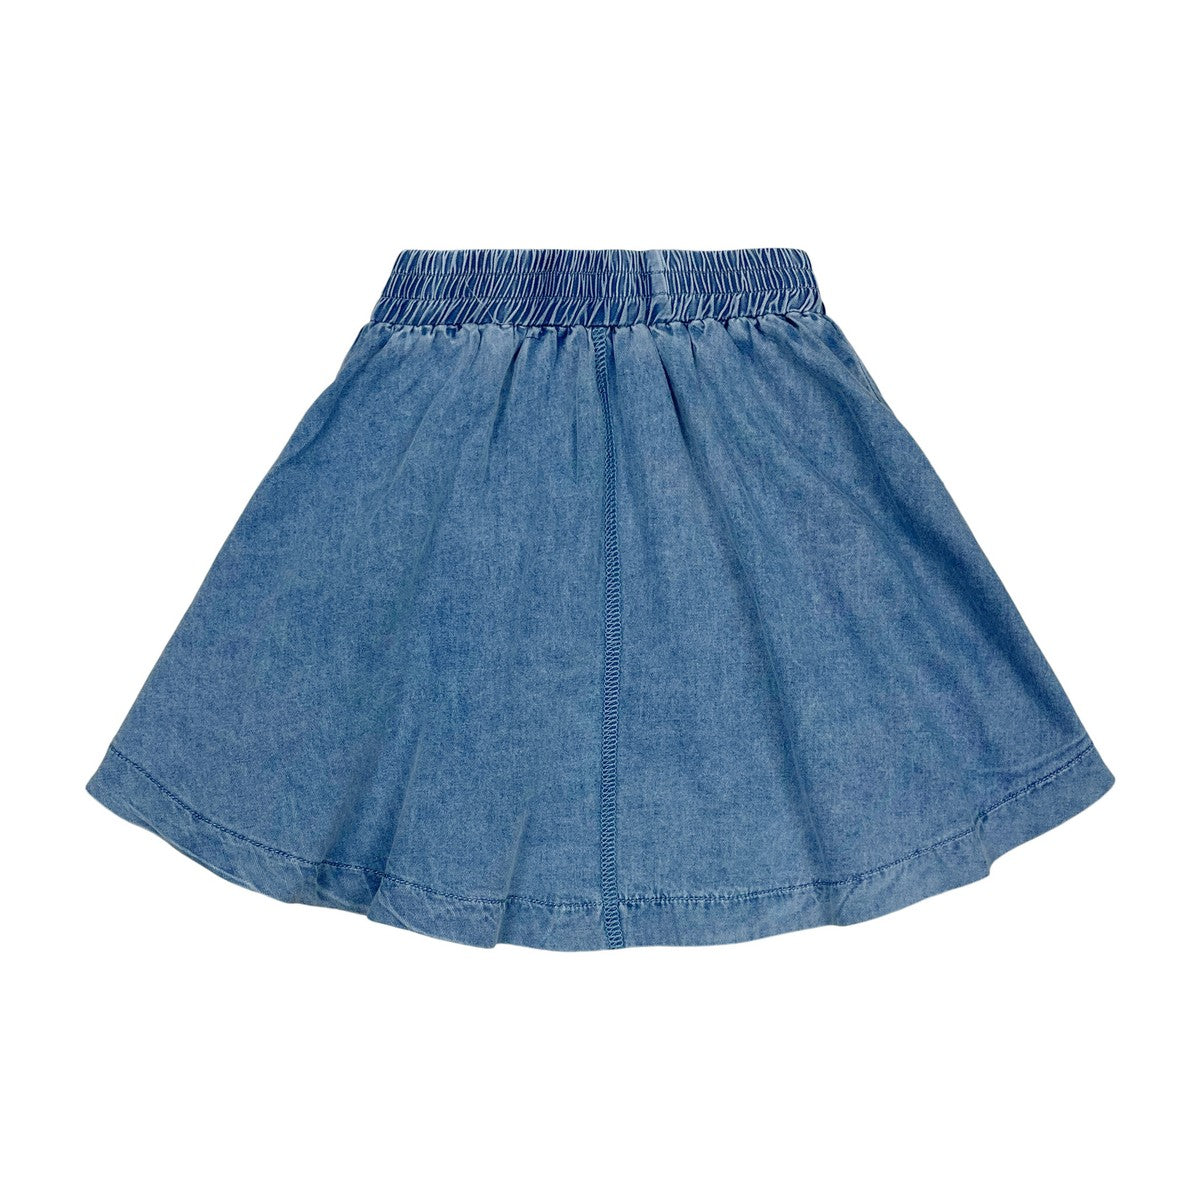 Midwash Denim Circle Skirt